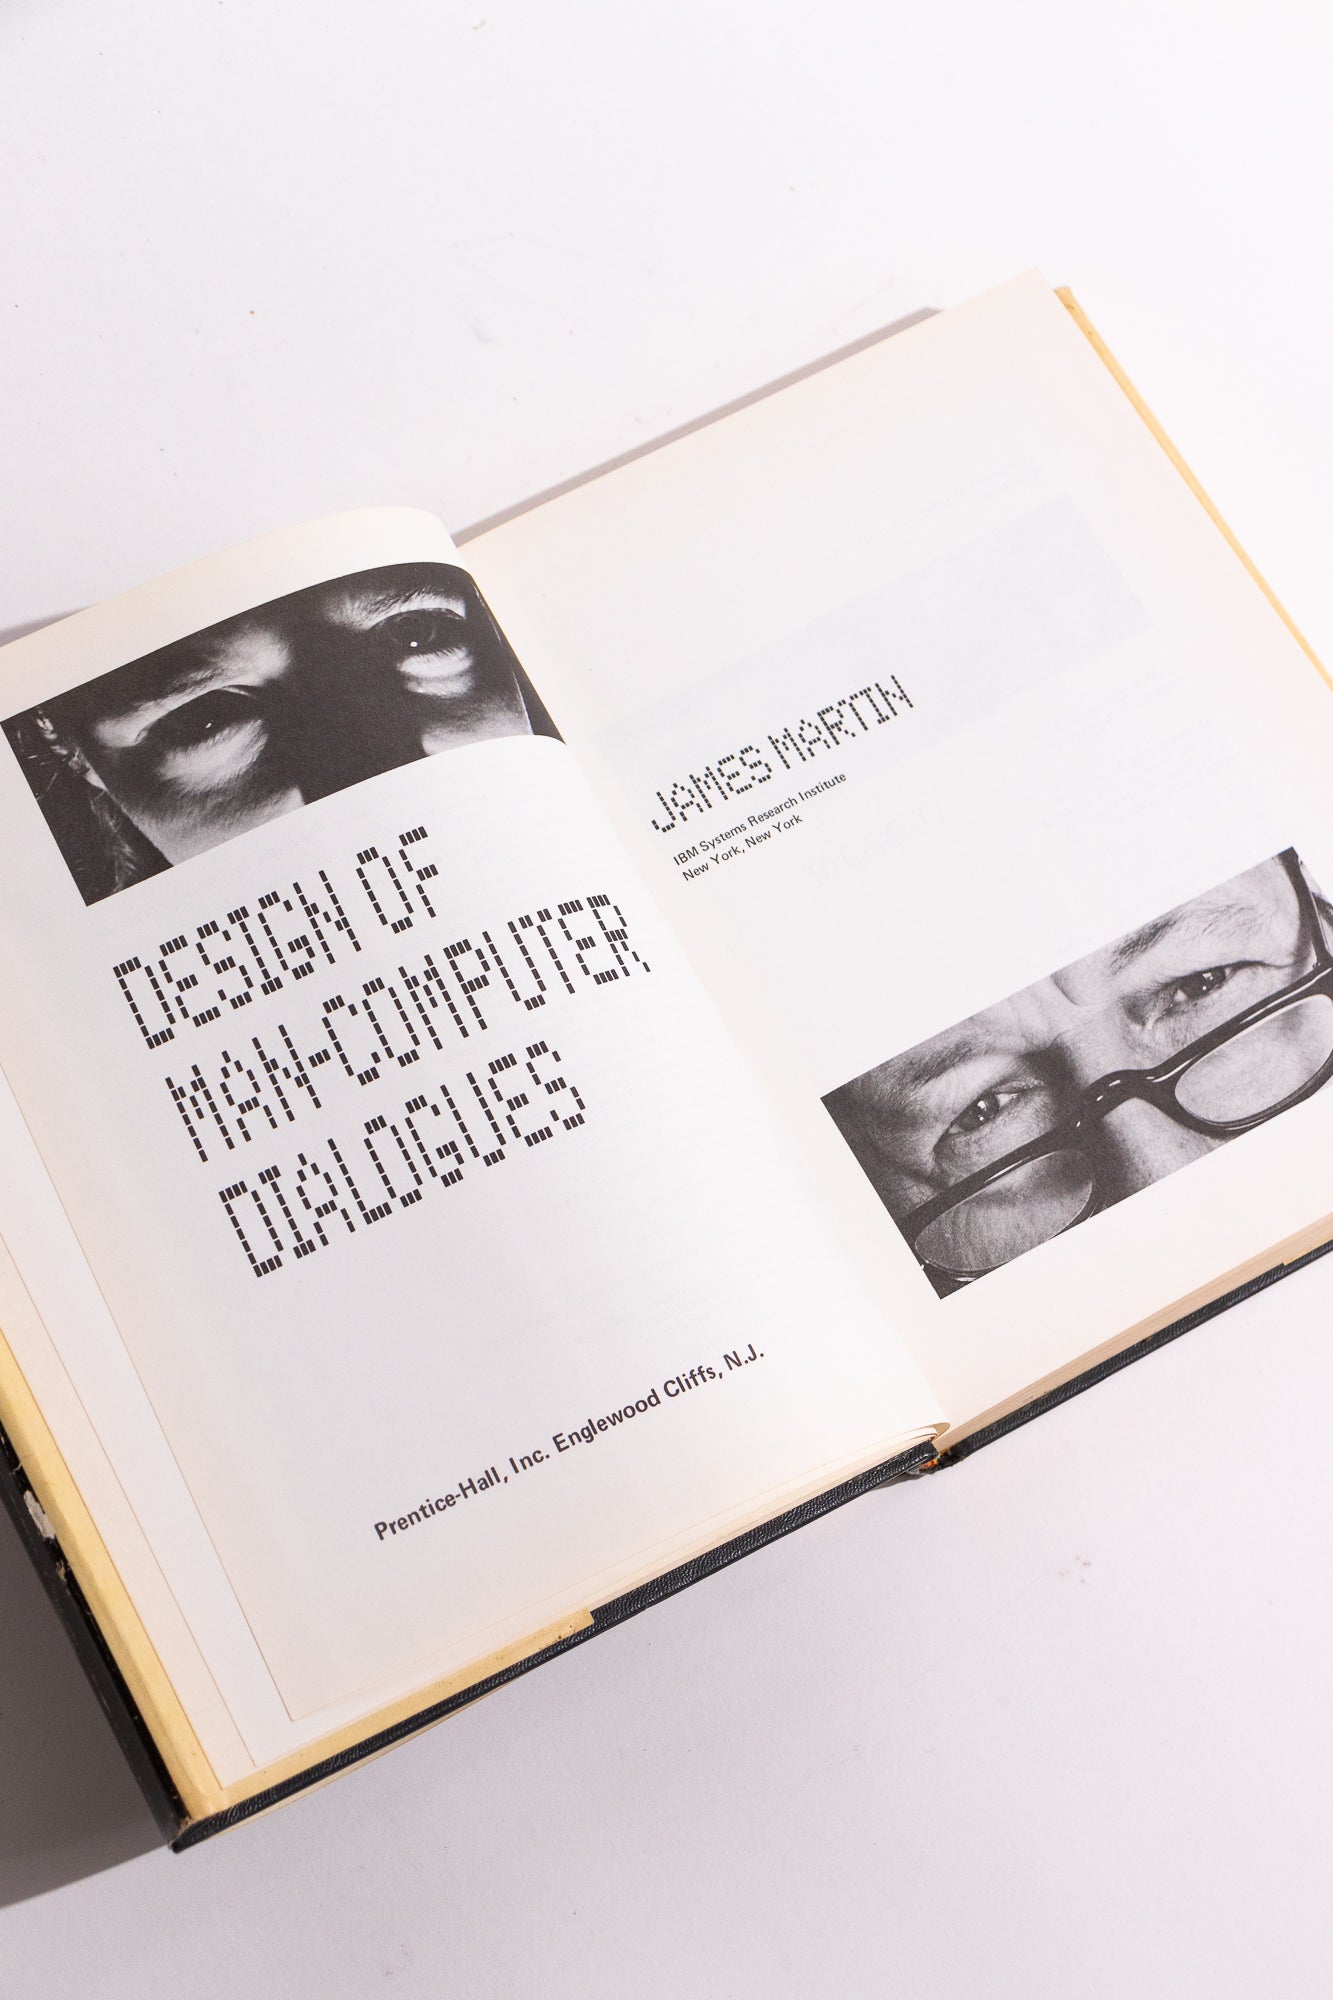 Design of Man-Computer Dialogues